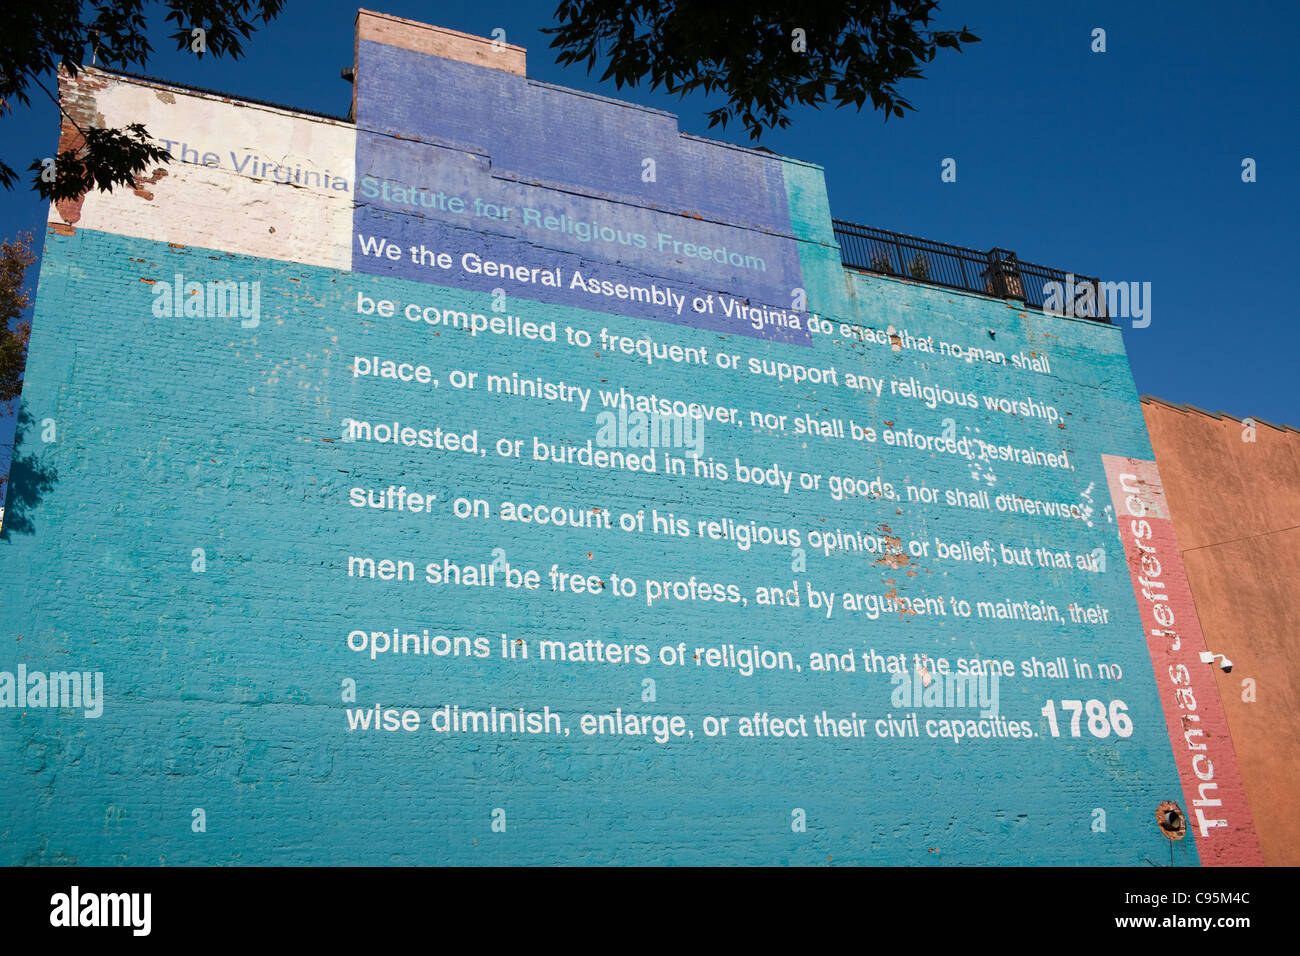 Die Virginia-Satzung für Religionsfreiheit, verfasst von Thomas Jefferson, gemalt auf einer Wand in Shockoe Slip, Richmond, Virginia Stockfoto